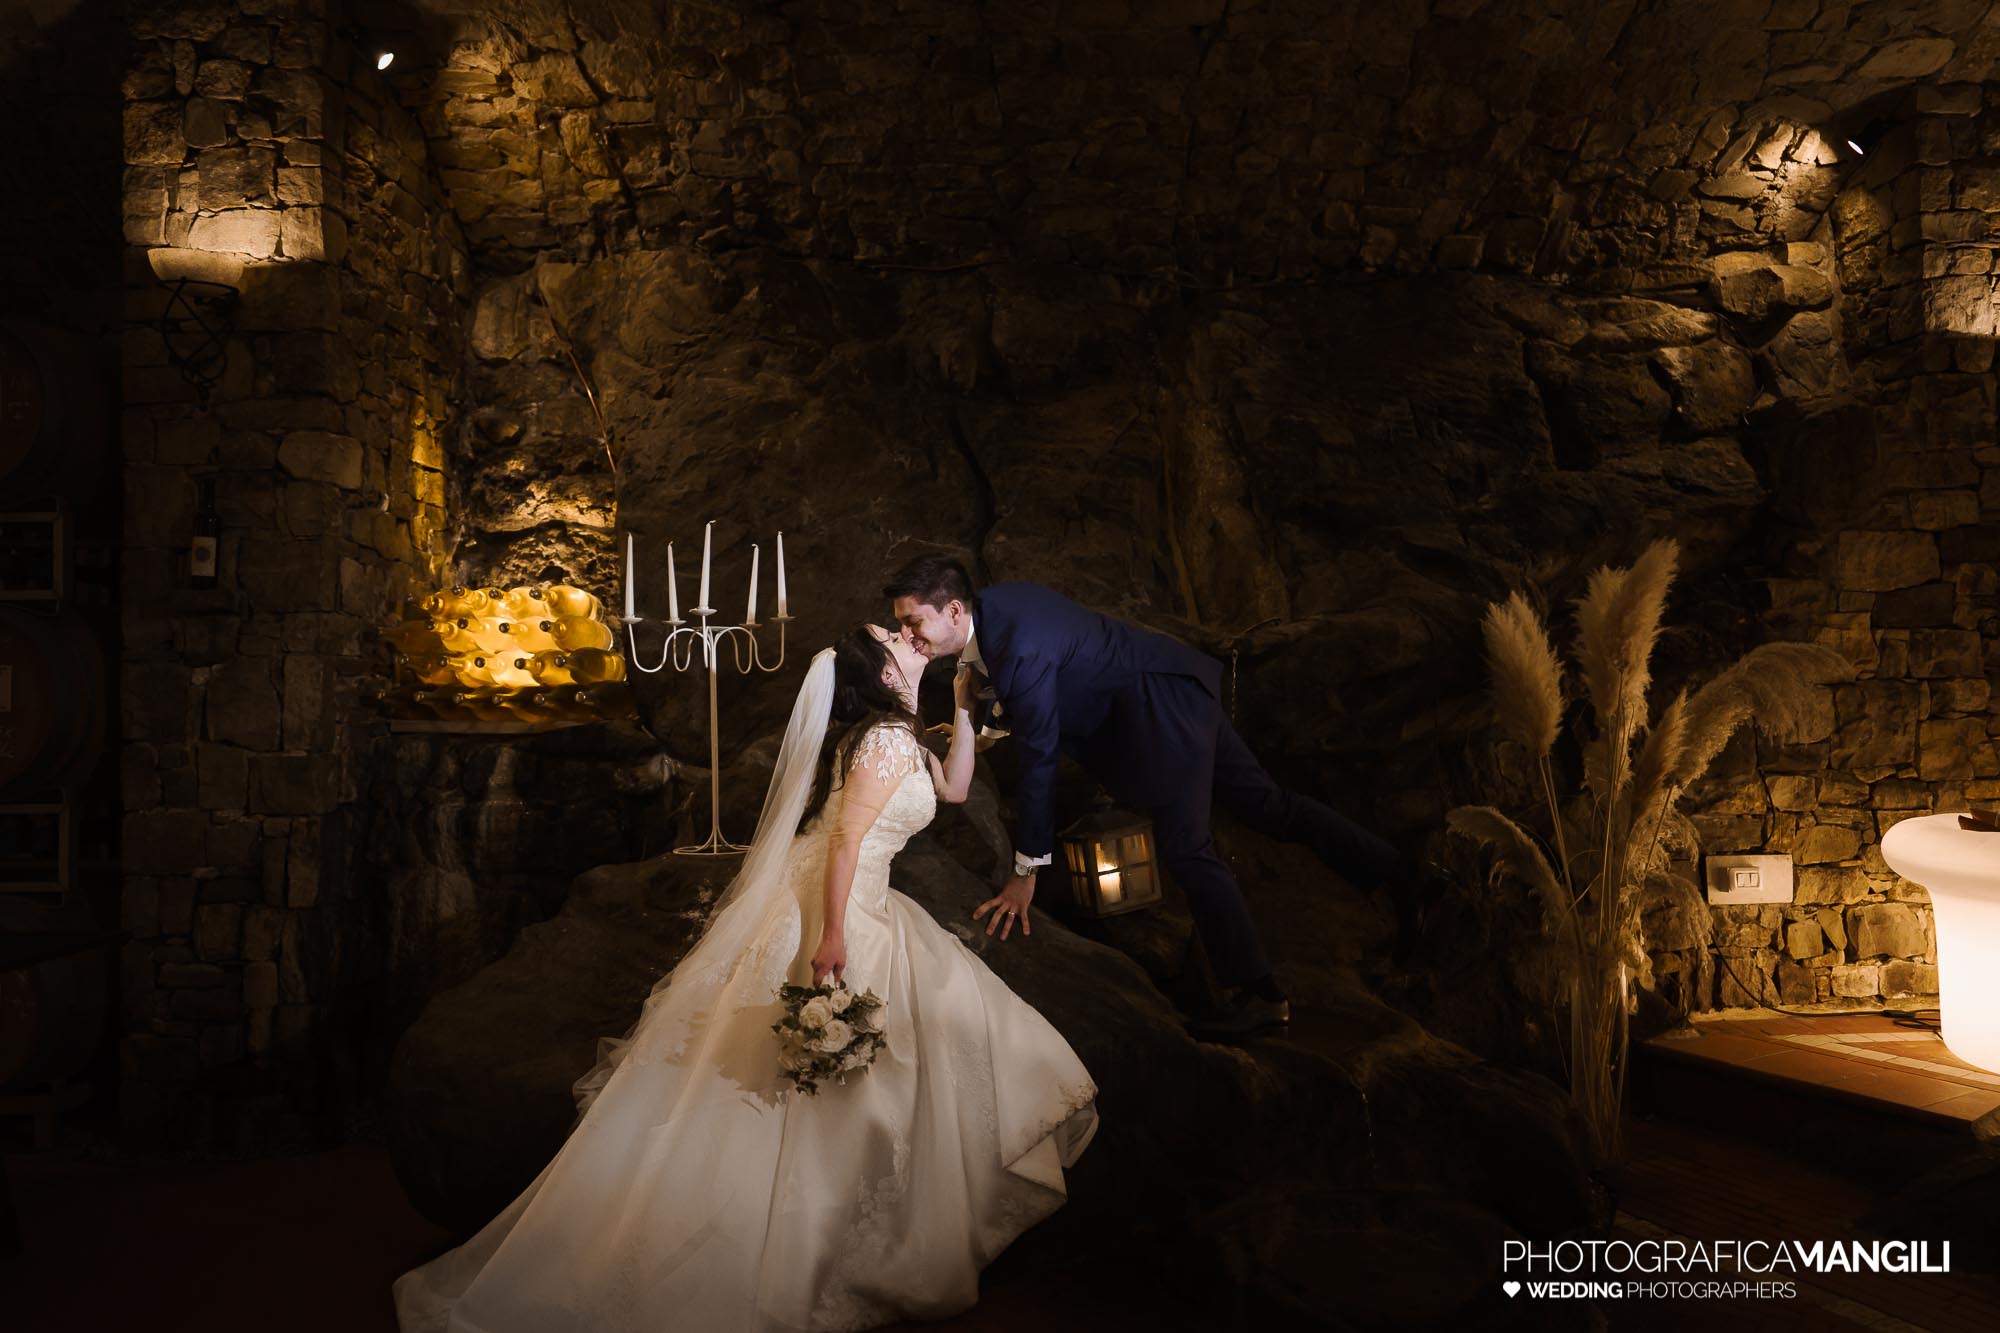 059 foto nozze wedding reportage ritratto spontaneo sposi bacio romantico il fontanile gandosso bergamo chiara oliviero